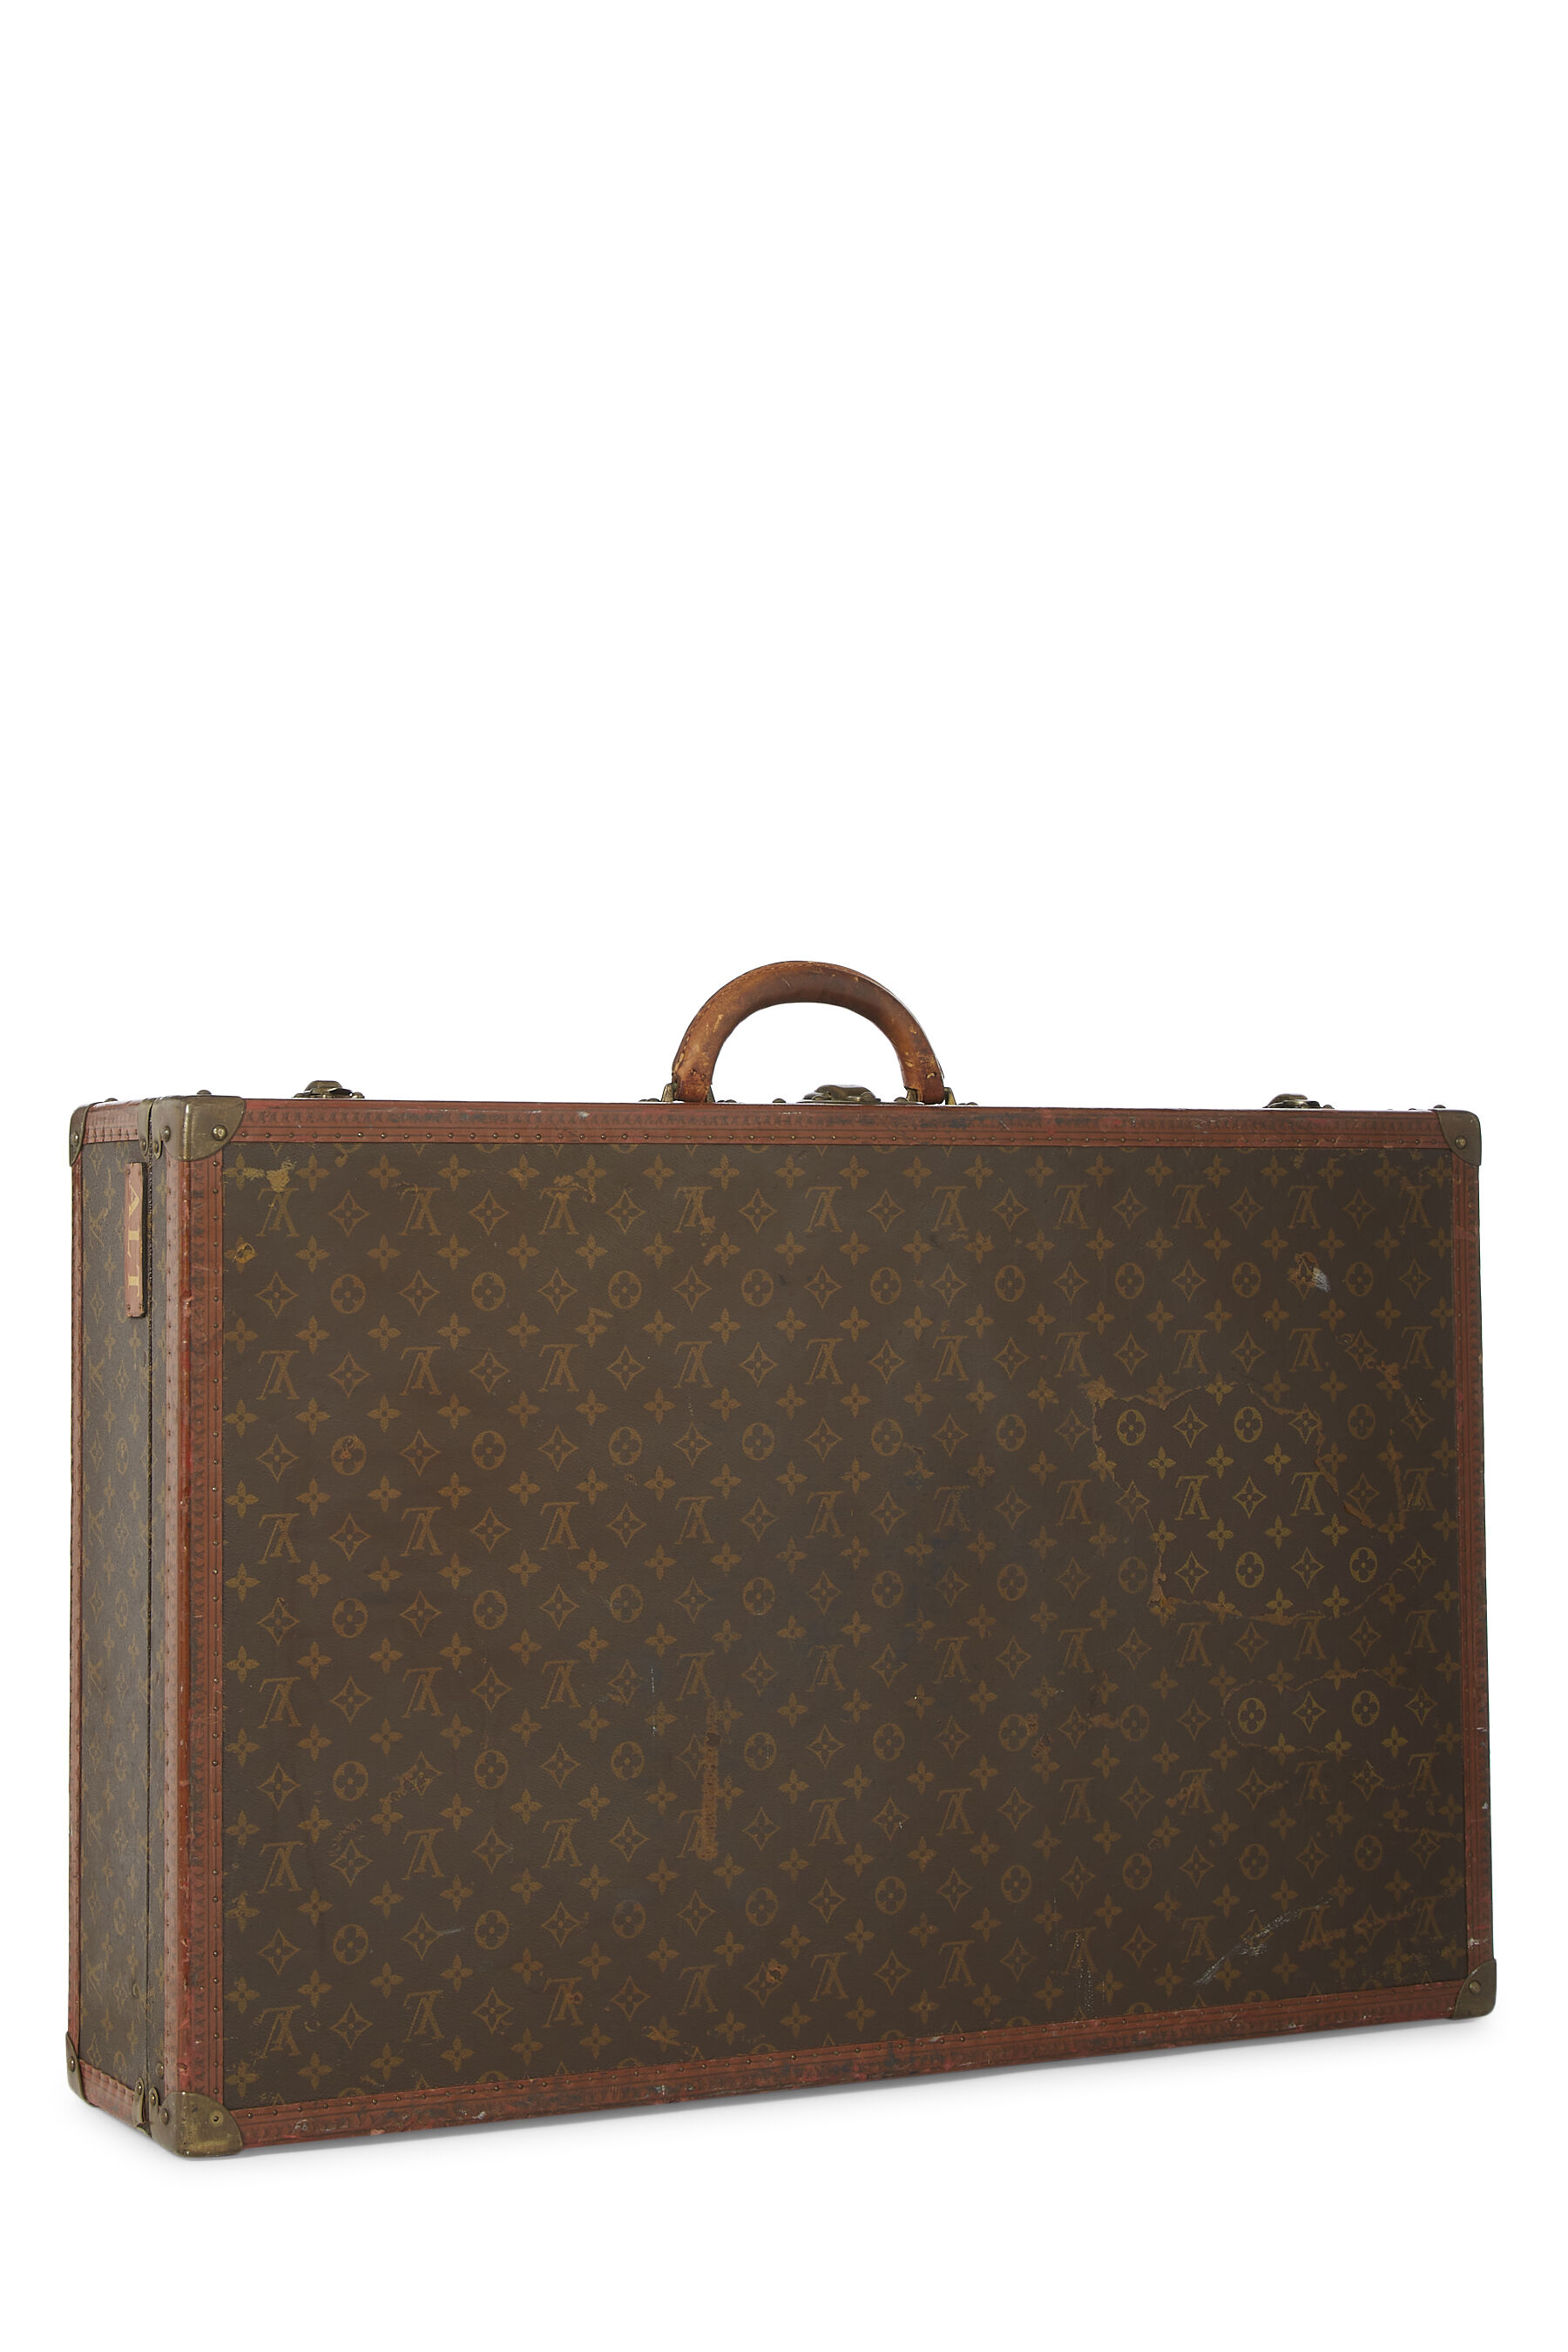 Louis Vuitton Vintage Monogram Canvas Bisten 80 Trunk Luggage Bag